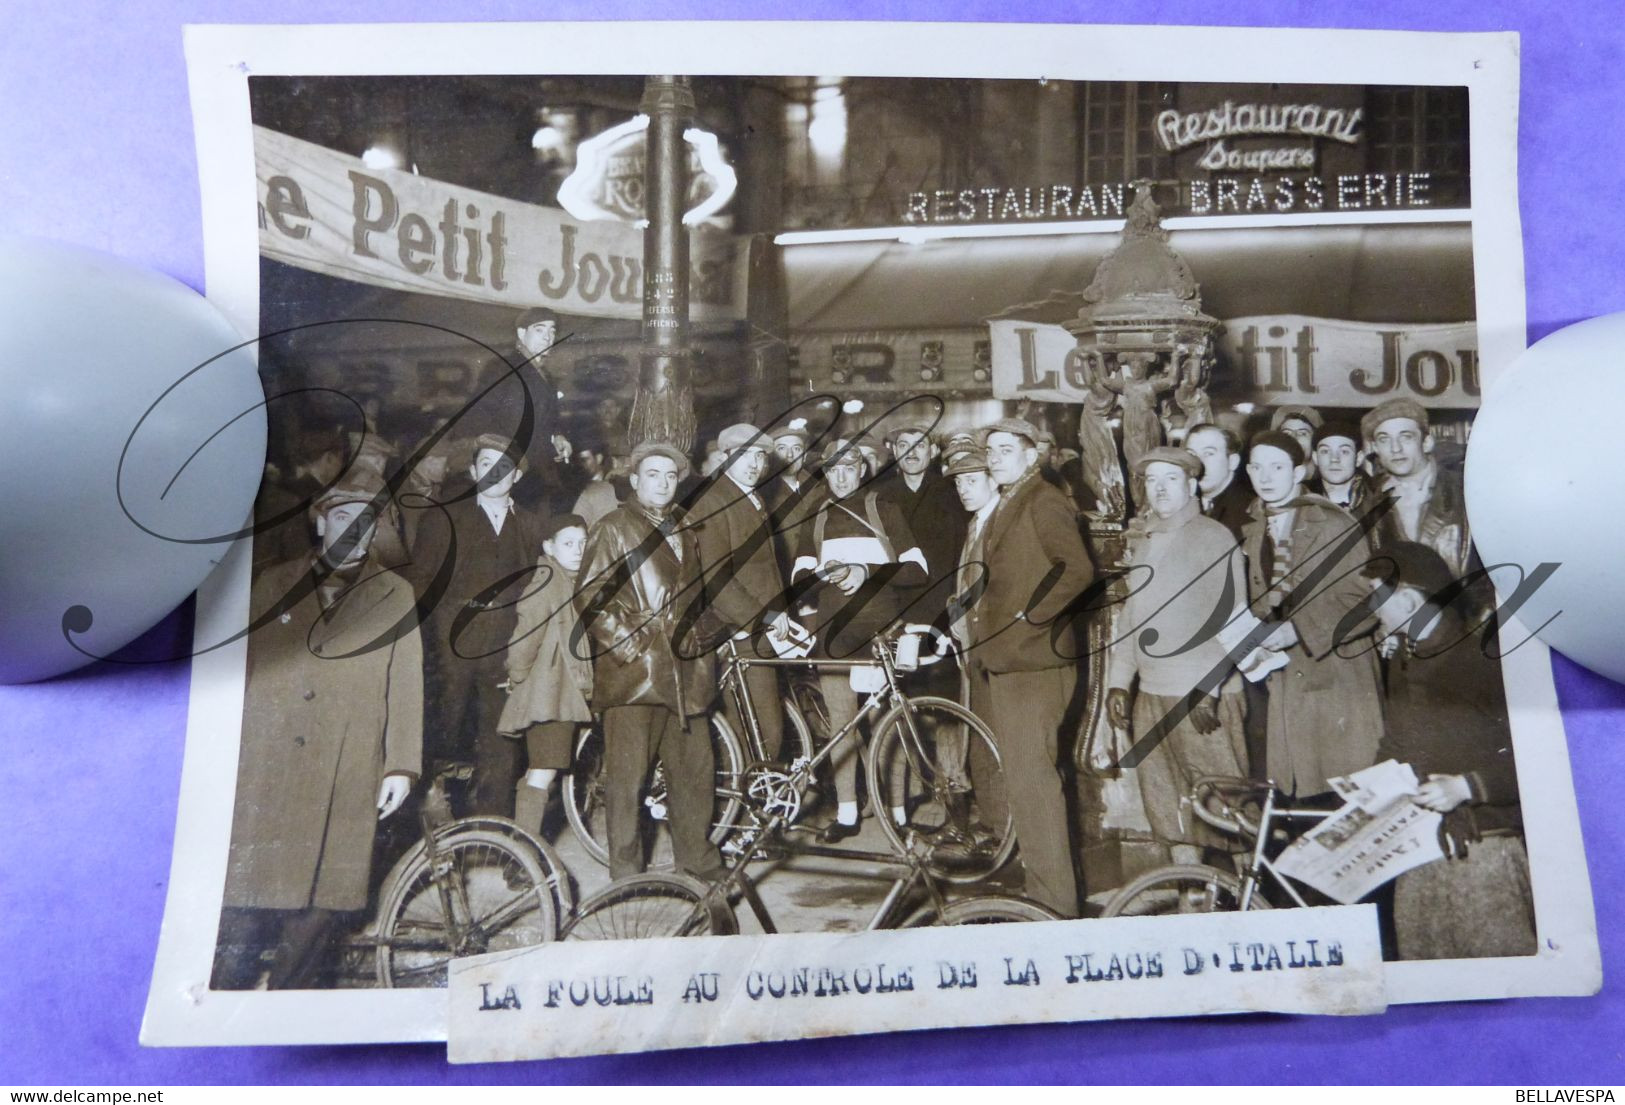 Cyclisme -La Foule Au Controle De La Place D'Italie 25/02/194 France Presse - Radsport